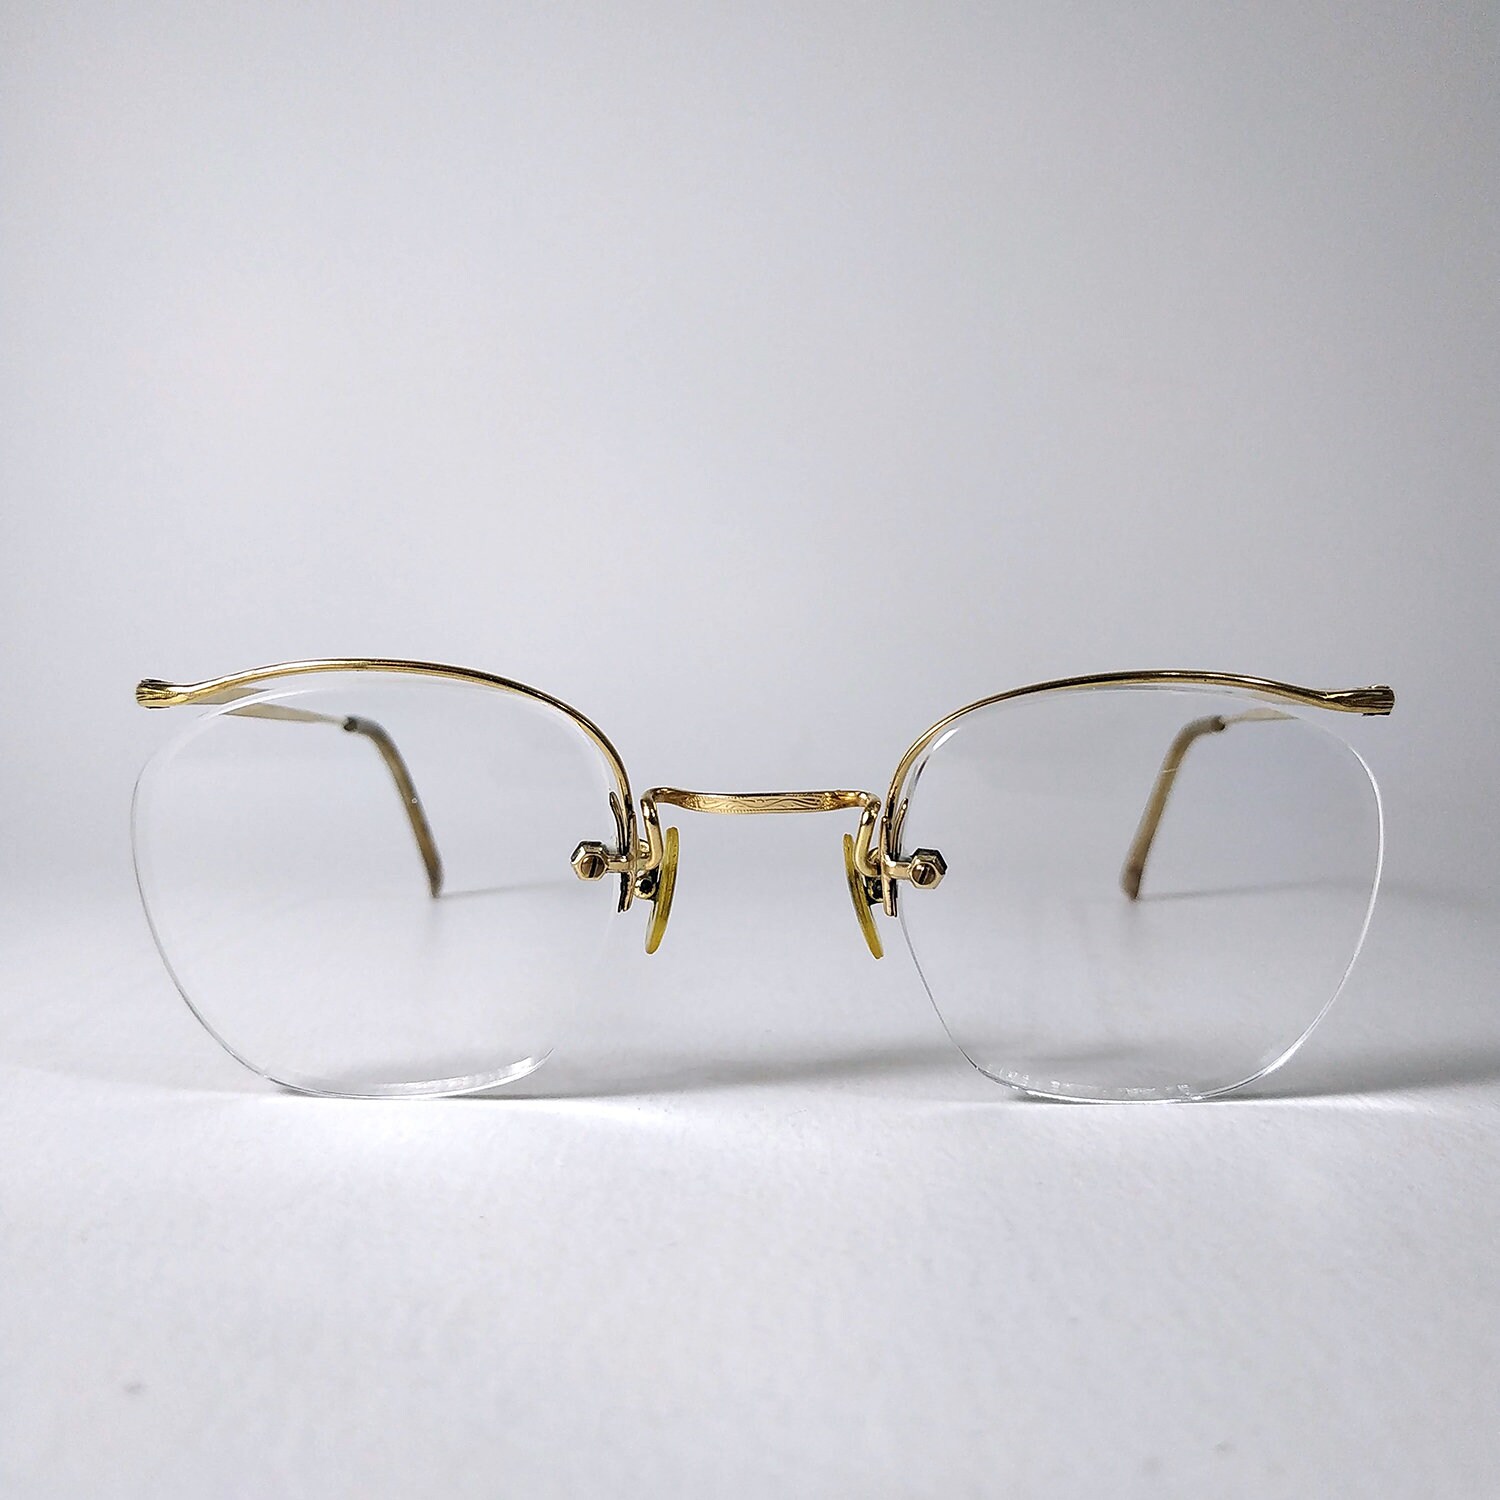 Antike, Gold Gefüllte, Randlose Brillenfassung. Mineralgläser. Stempel Auf Steg - Ngs von ArcusVita